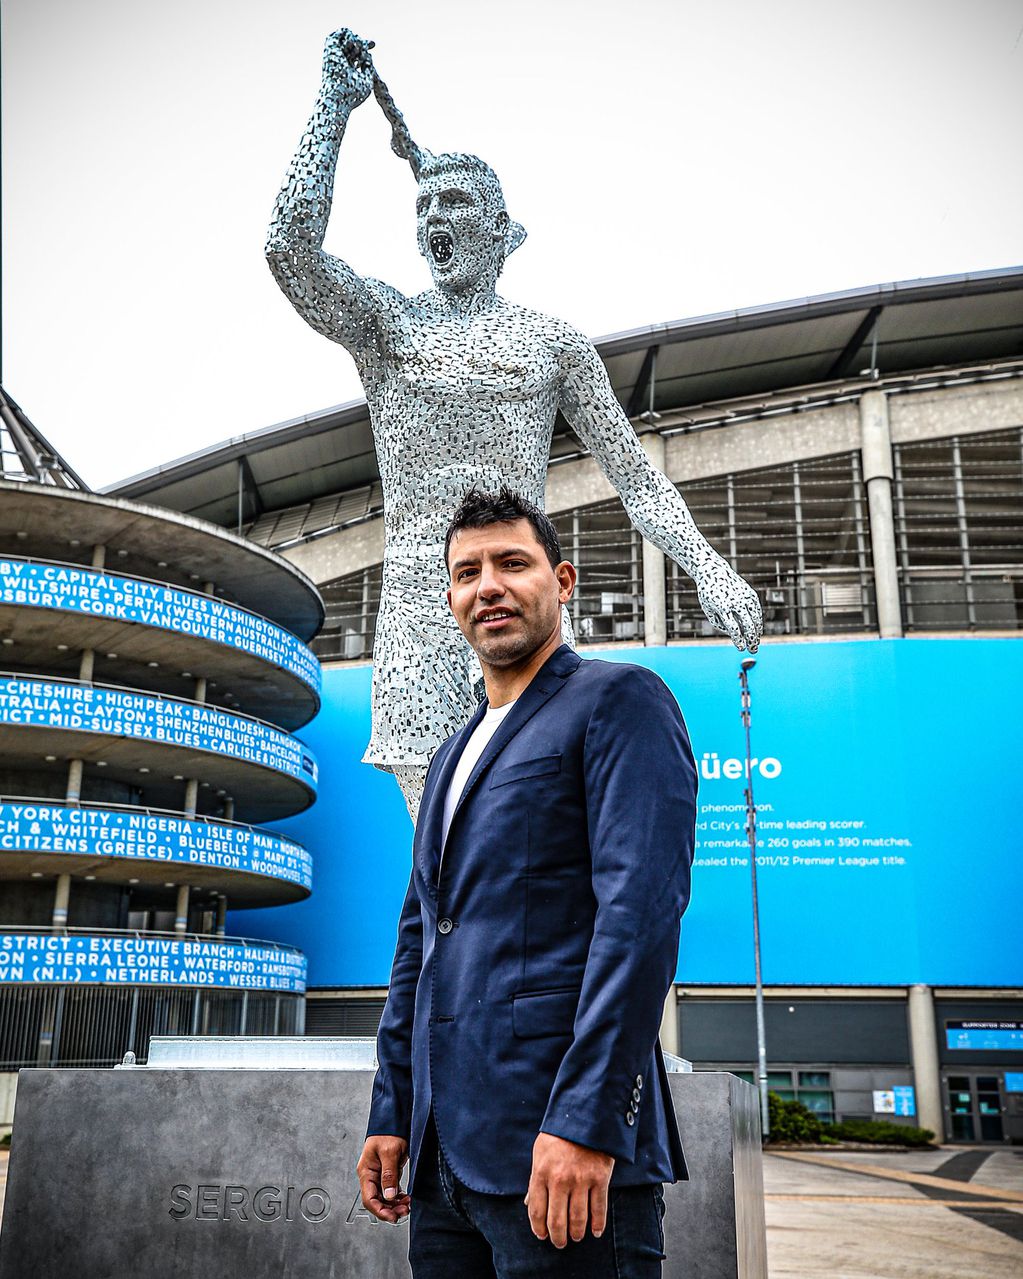 El Kun Agüero estuvo presente en la inauguración de su estatua en el estadio del Manchester City, donde jugó 10 temporadas.